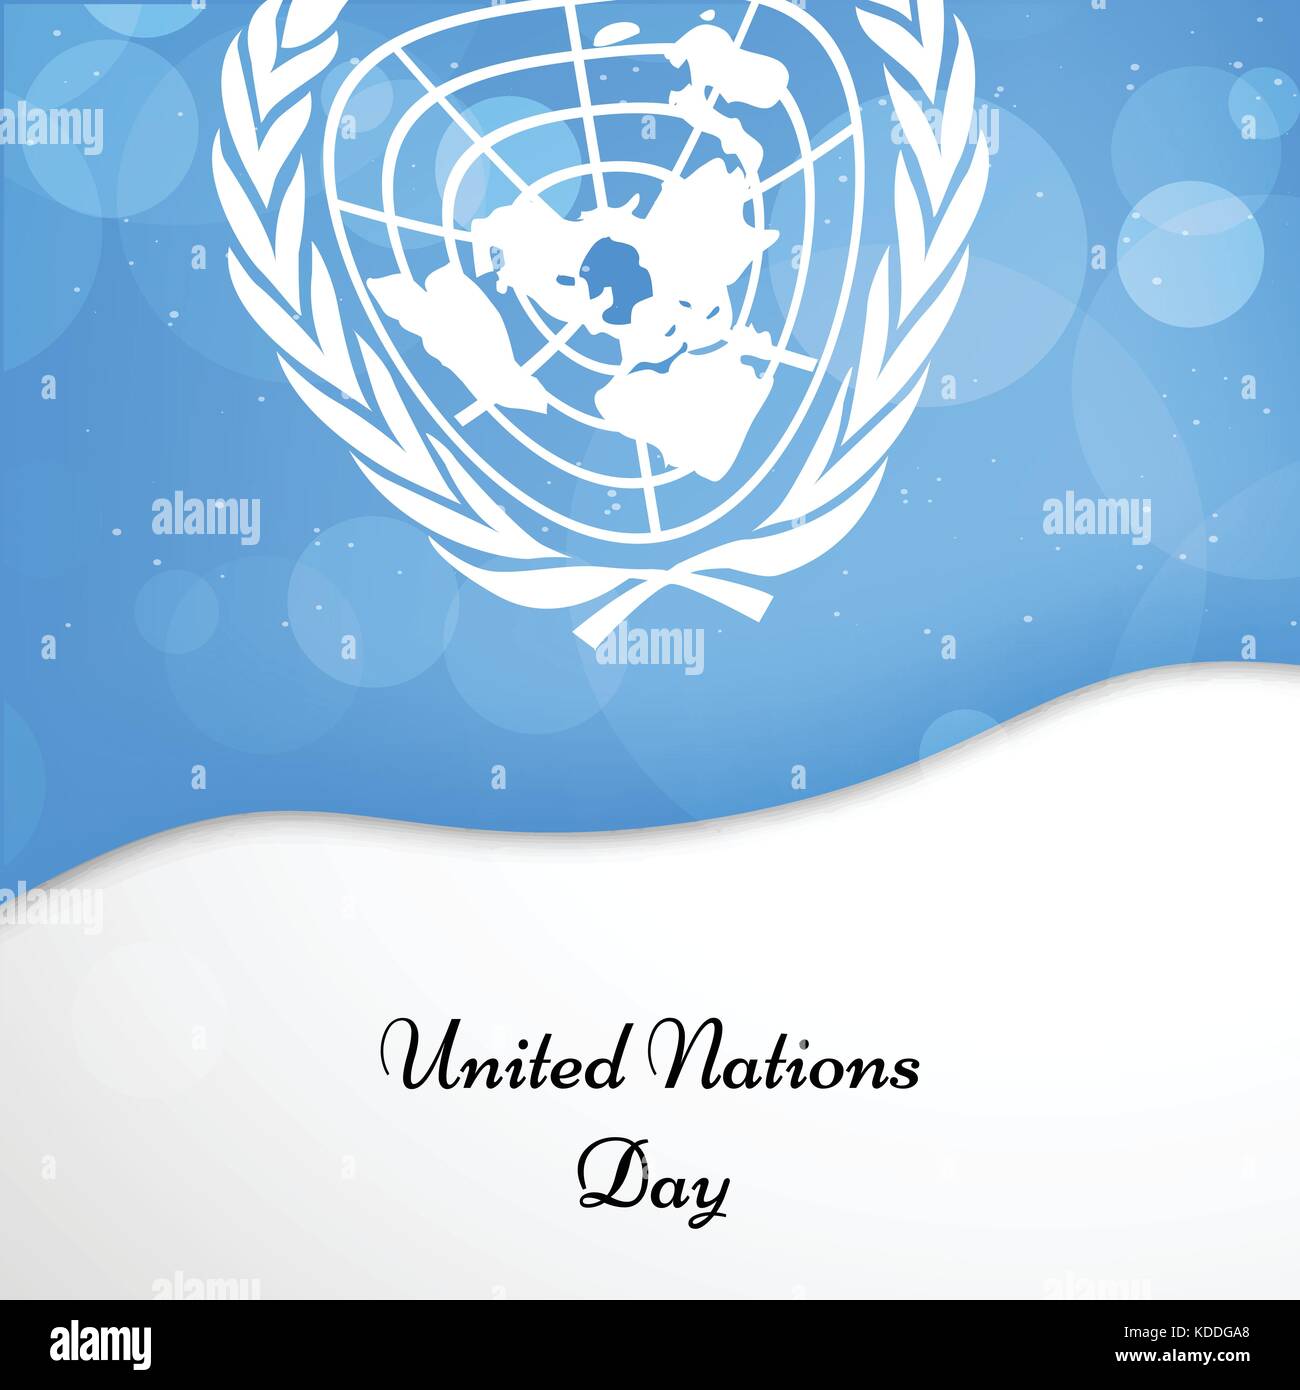 Tranh minh họa các yếu tố của Nền tảng Ngày Liên Hiệp Quốc Stock sẽ mang đến cho bạn cái nhìn sâu sắc về các mục tiêu, giá trị và hoạt động của tổ chức. Với tất cả các biểu tượng và hình ảnh cần thiết, bạn có thể tạo nên một tác phẩm nghệ thuật tuyệt đẹp để thể hiện lòng tôn trọng của bạn đối với Liên Hiệp Quốc.